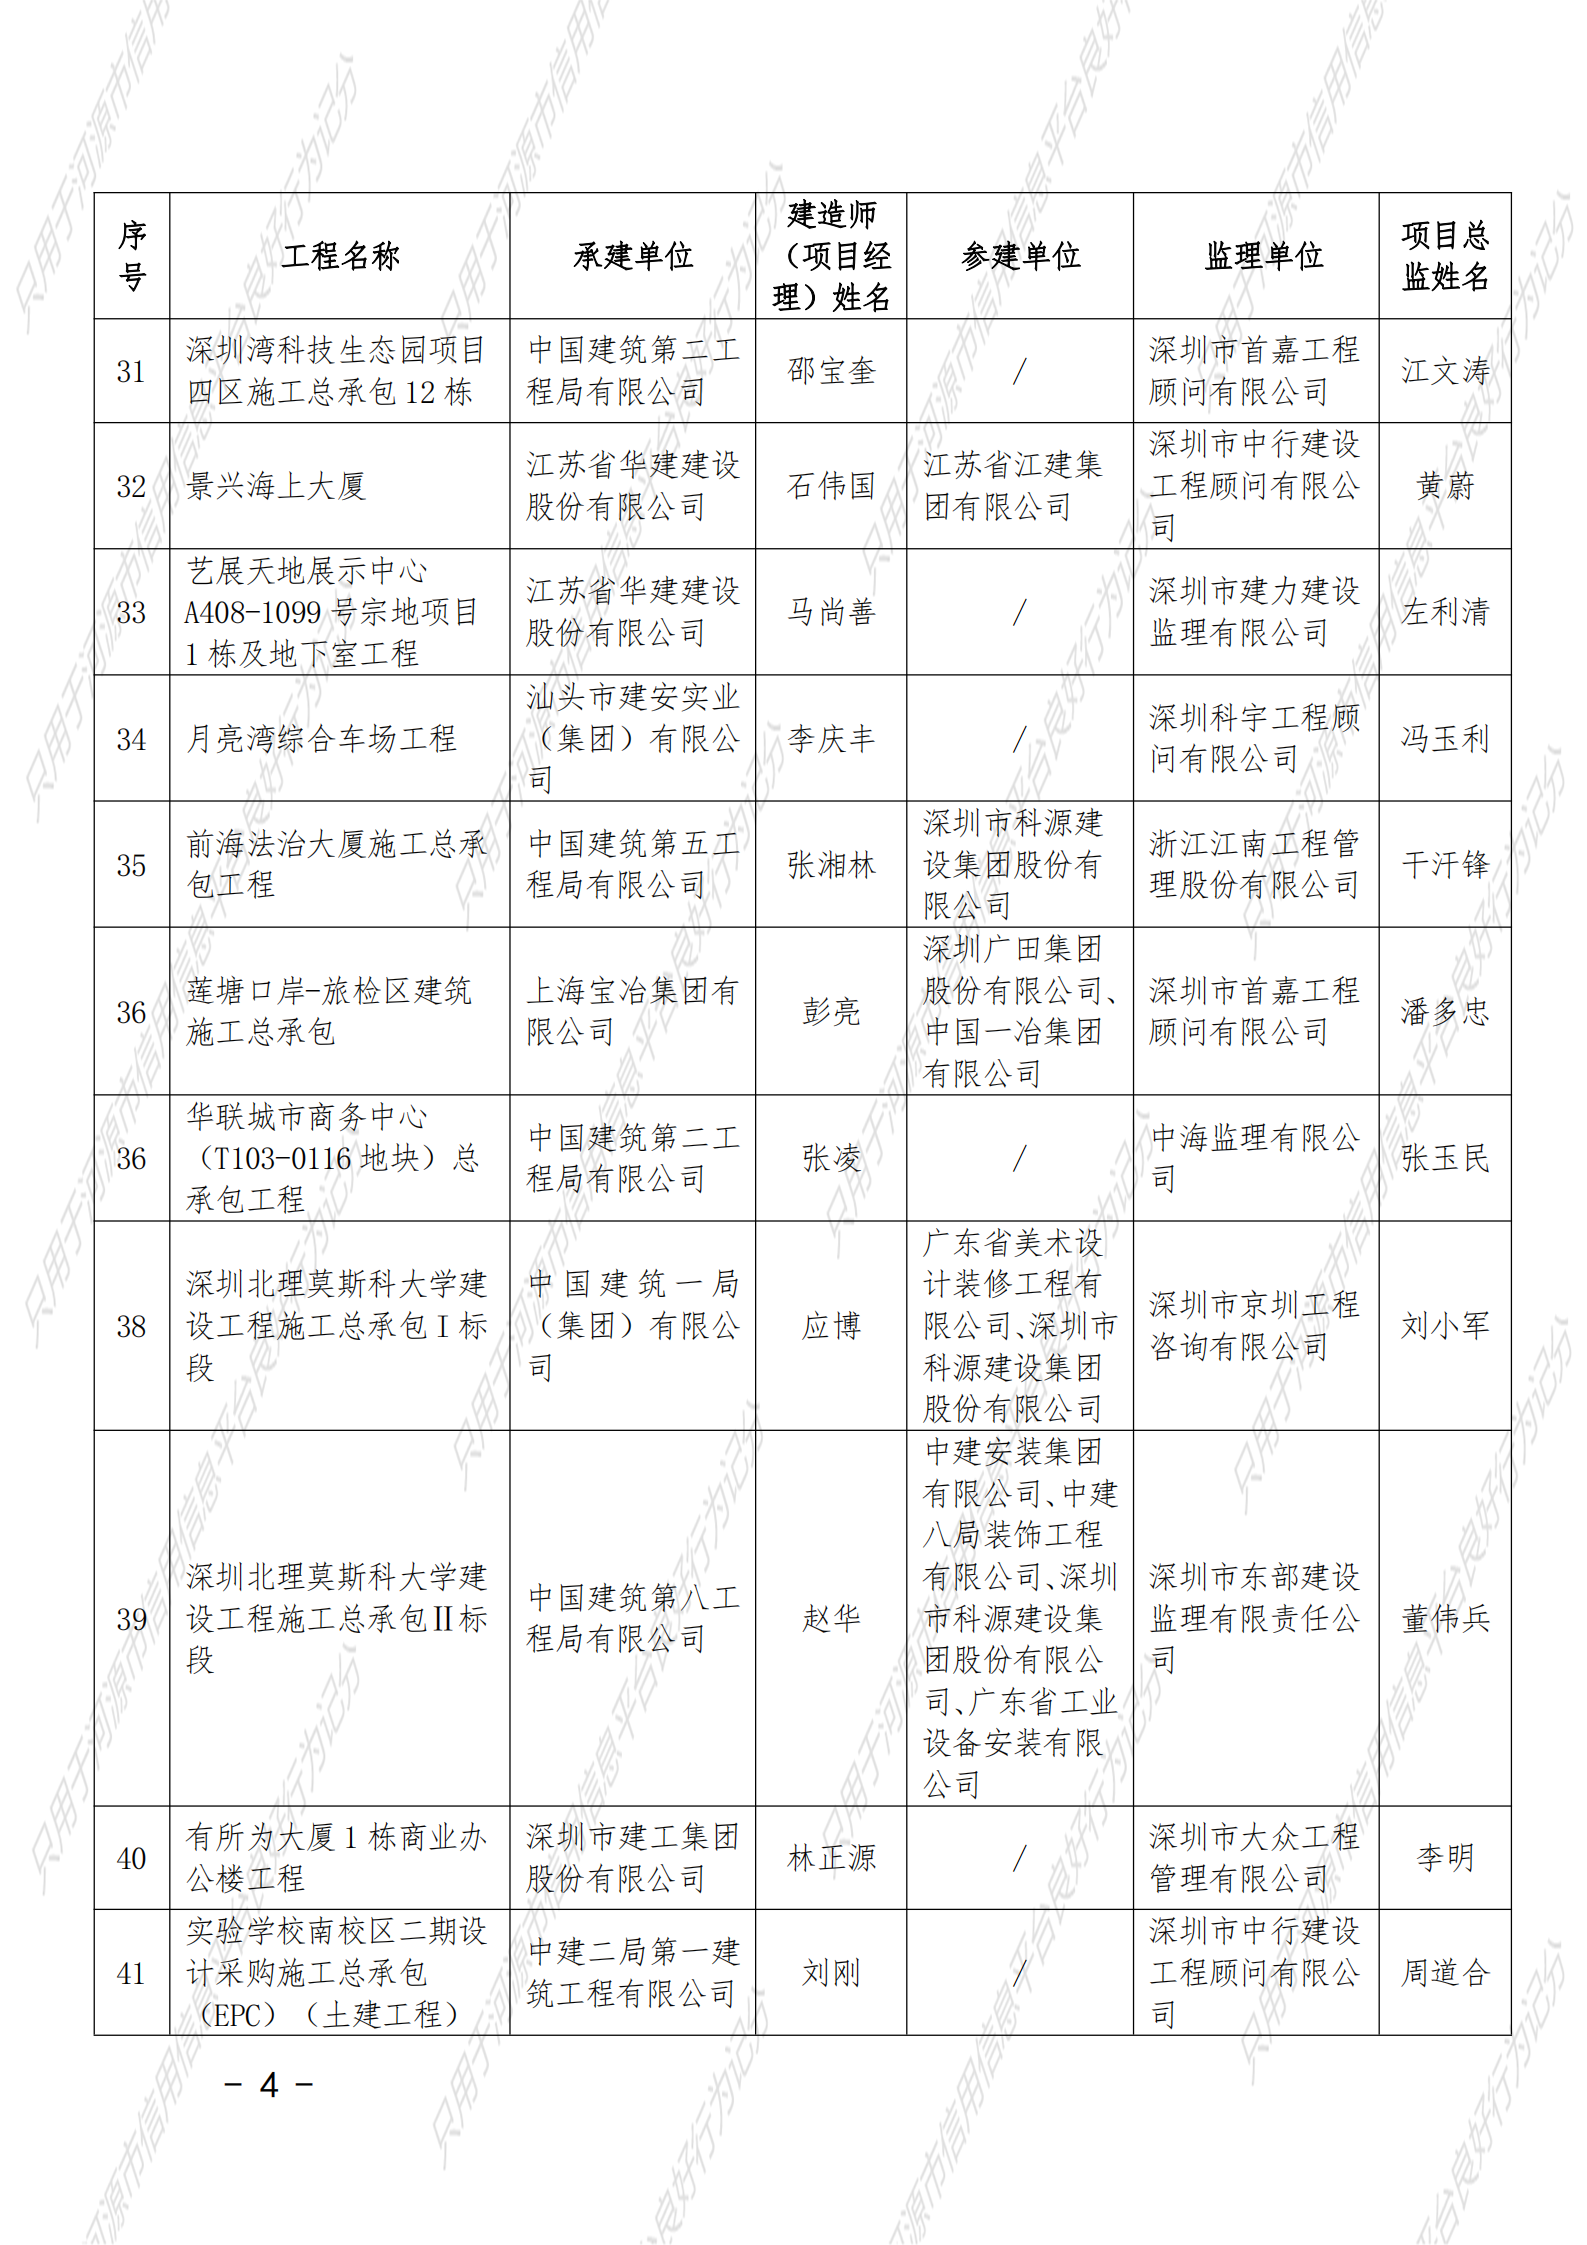 附件 2021年度广东省建设工程优质奖（房屋建筑及专业工程）名单_03